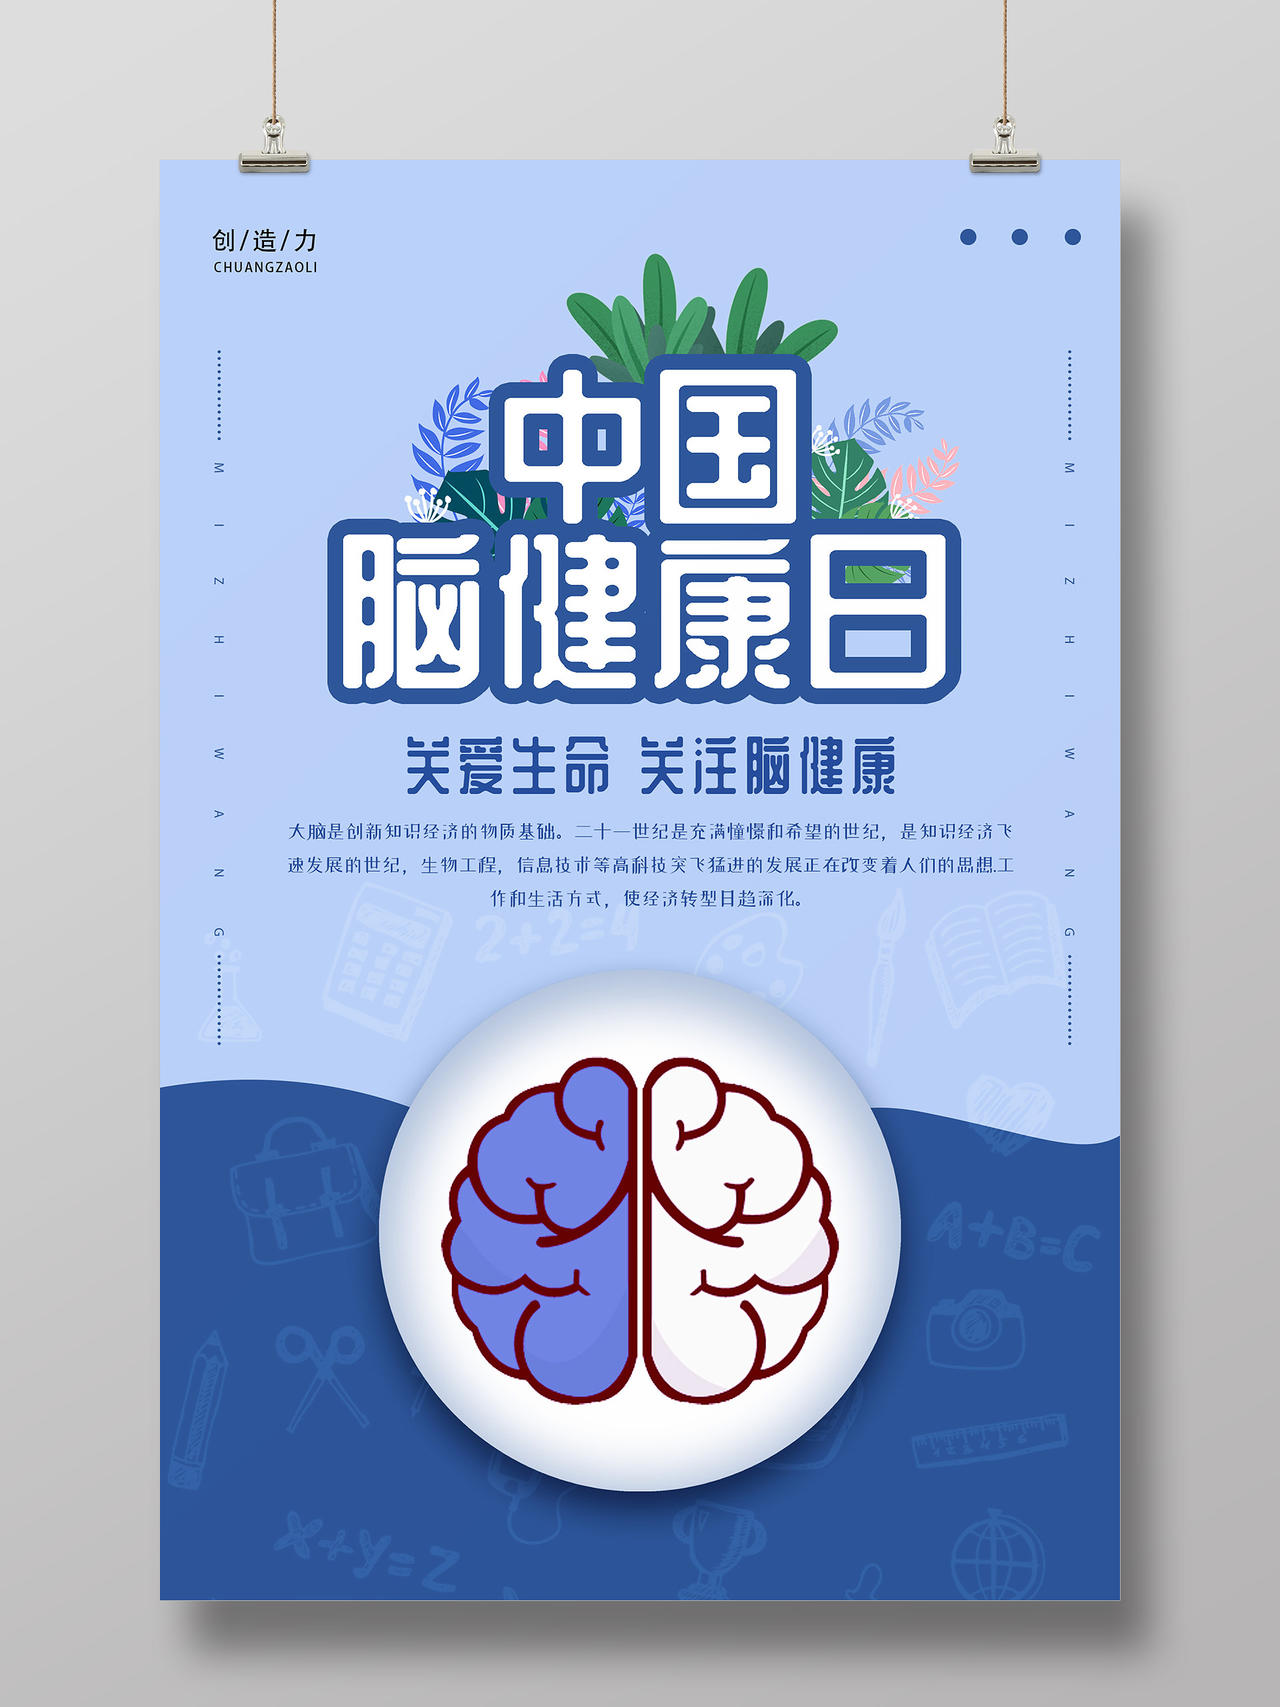 蓝色小清新简约创意插画中国脑健康日海报